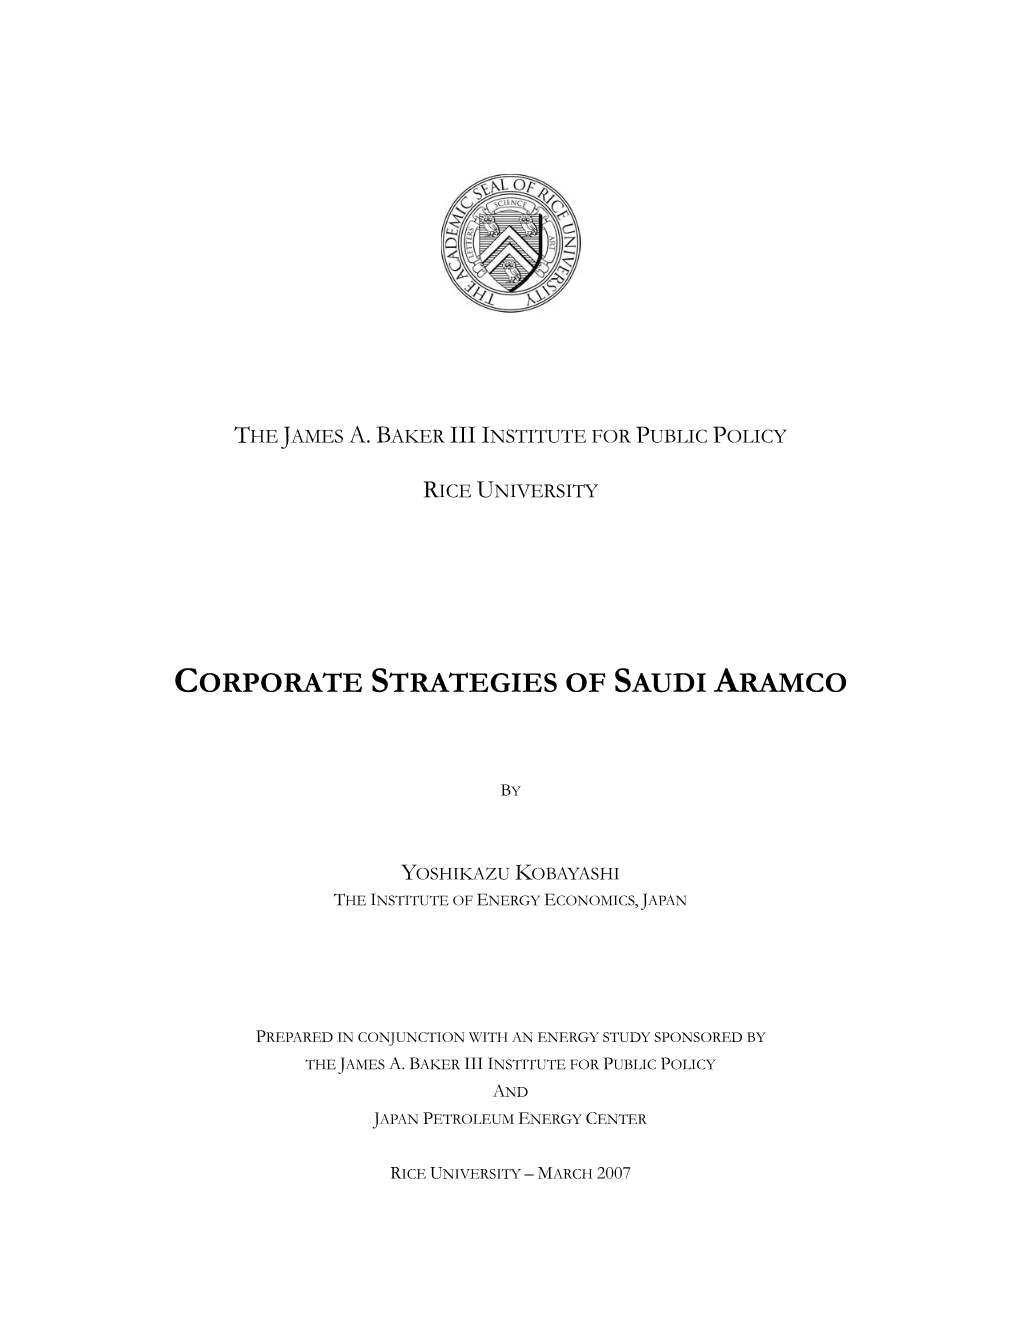 Corporate Strategies of Saudi Aramco